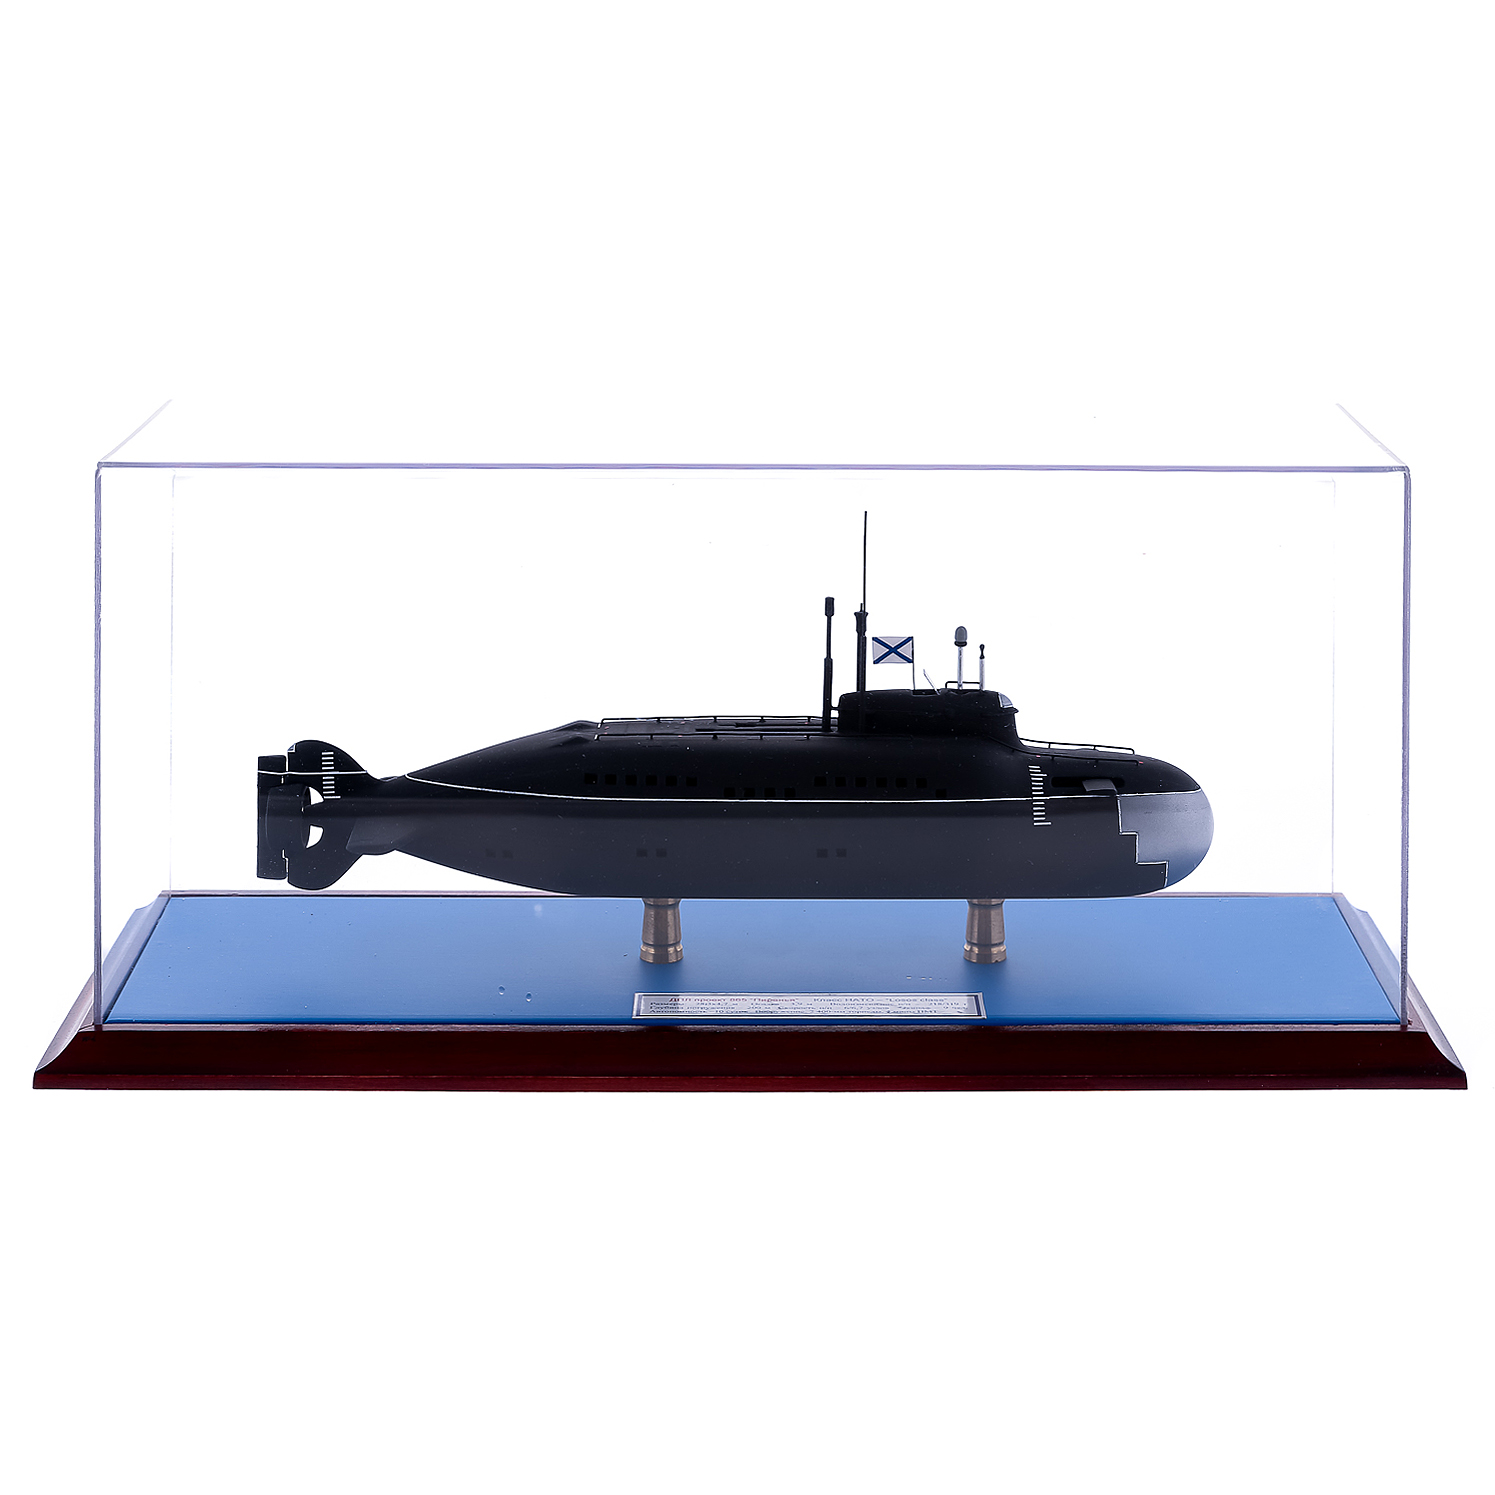 Модель титановой малогабаритной подводной лодки пр.865 